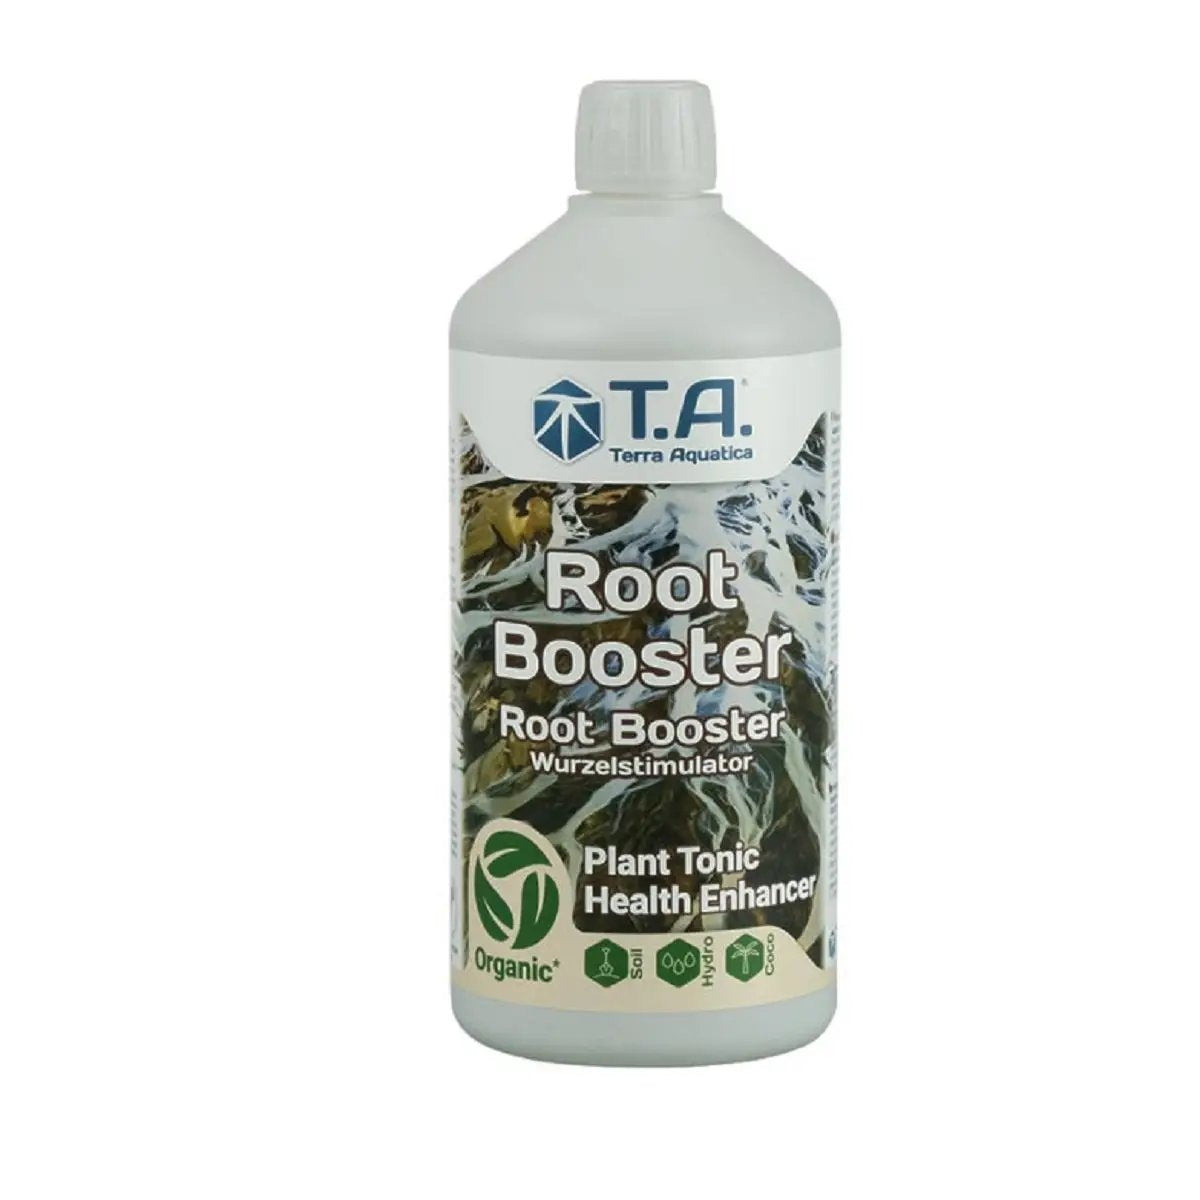 Le stimulateur de racines Terra aquatica Root Booster 1 litre